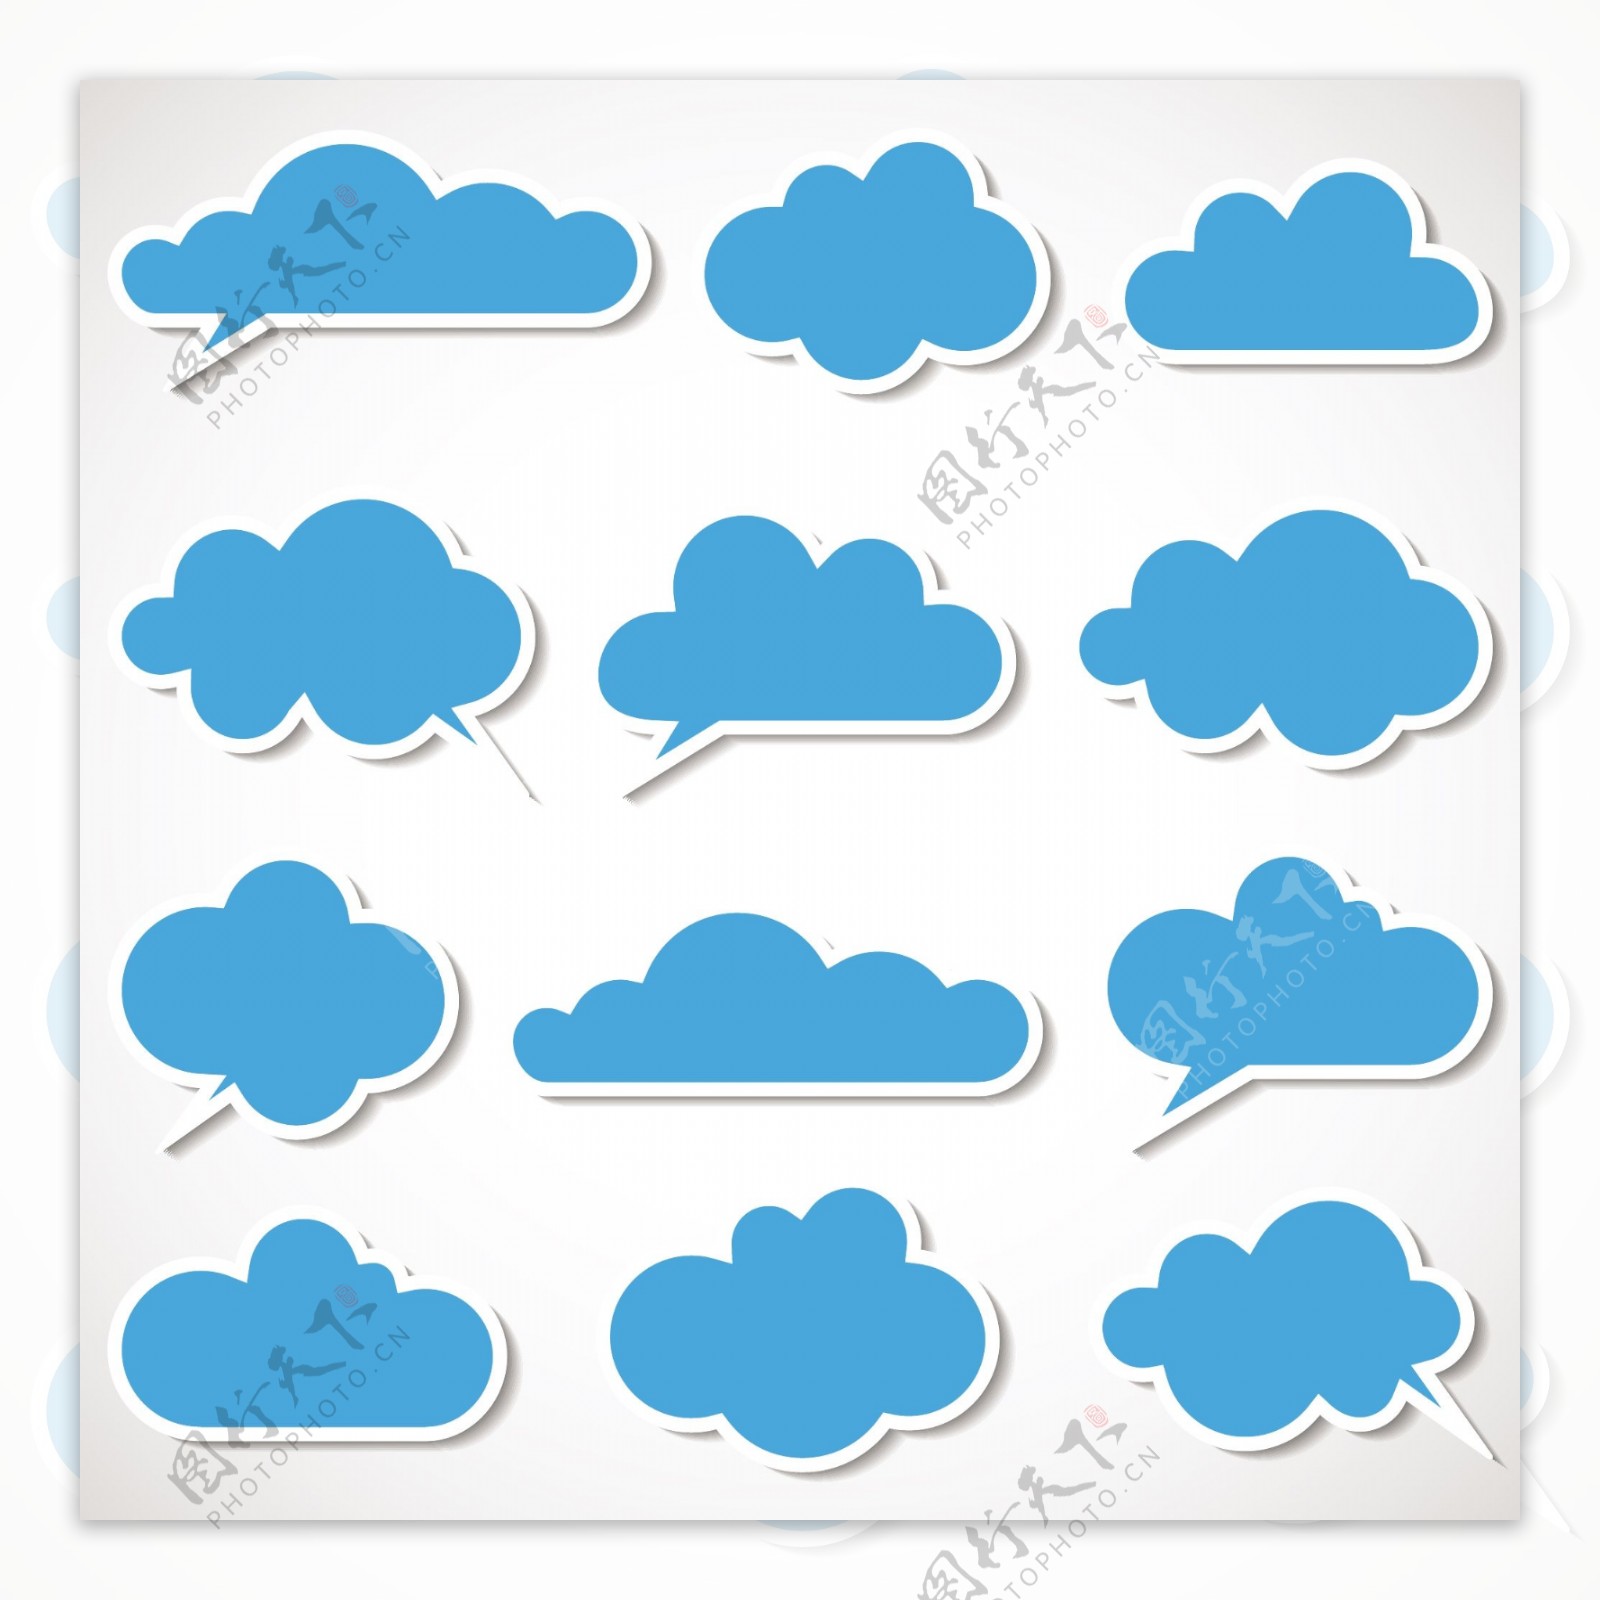 对话框式云朵设计